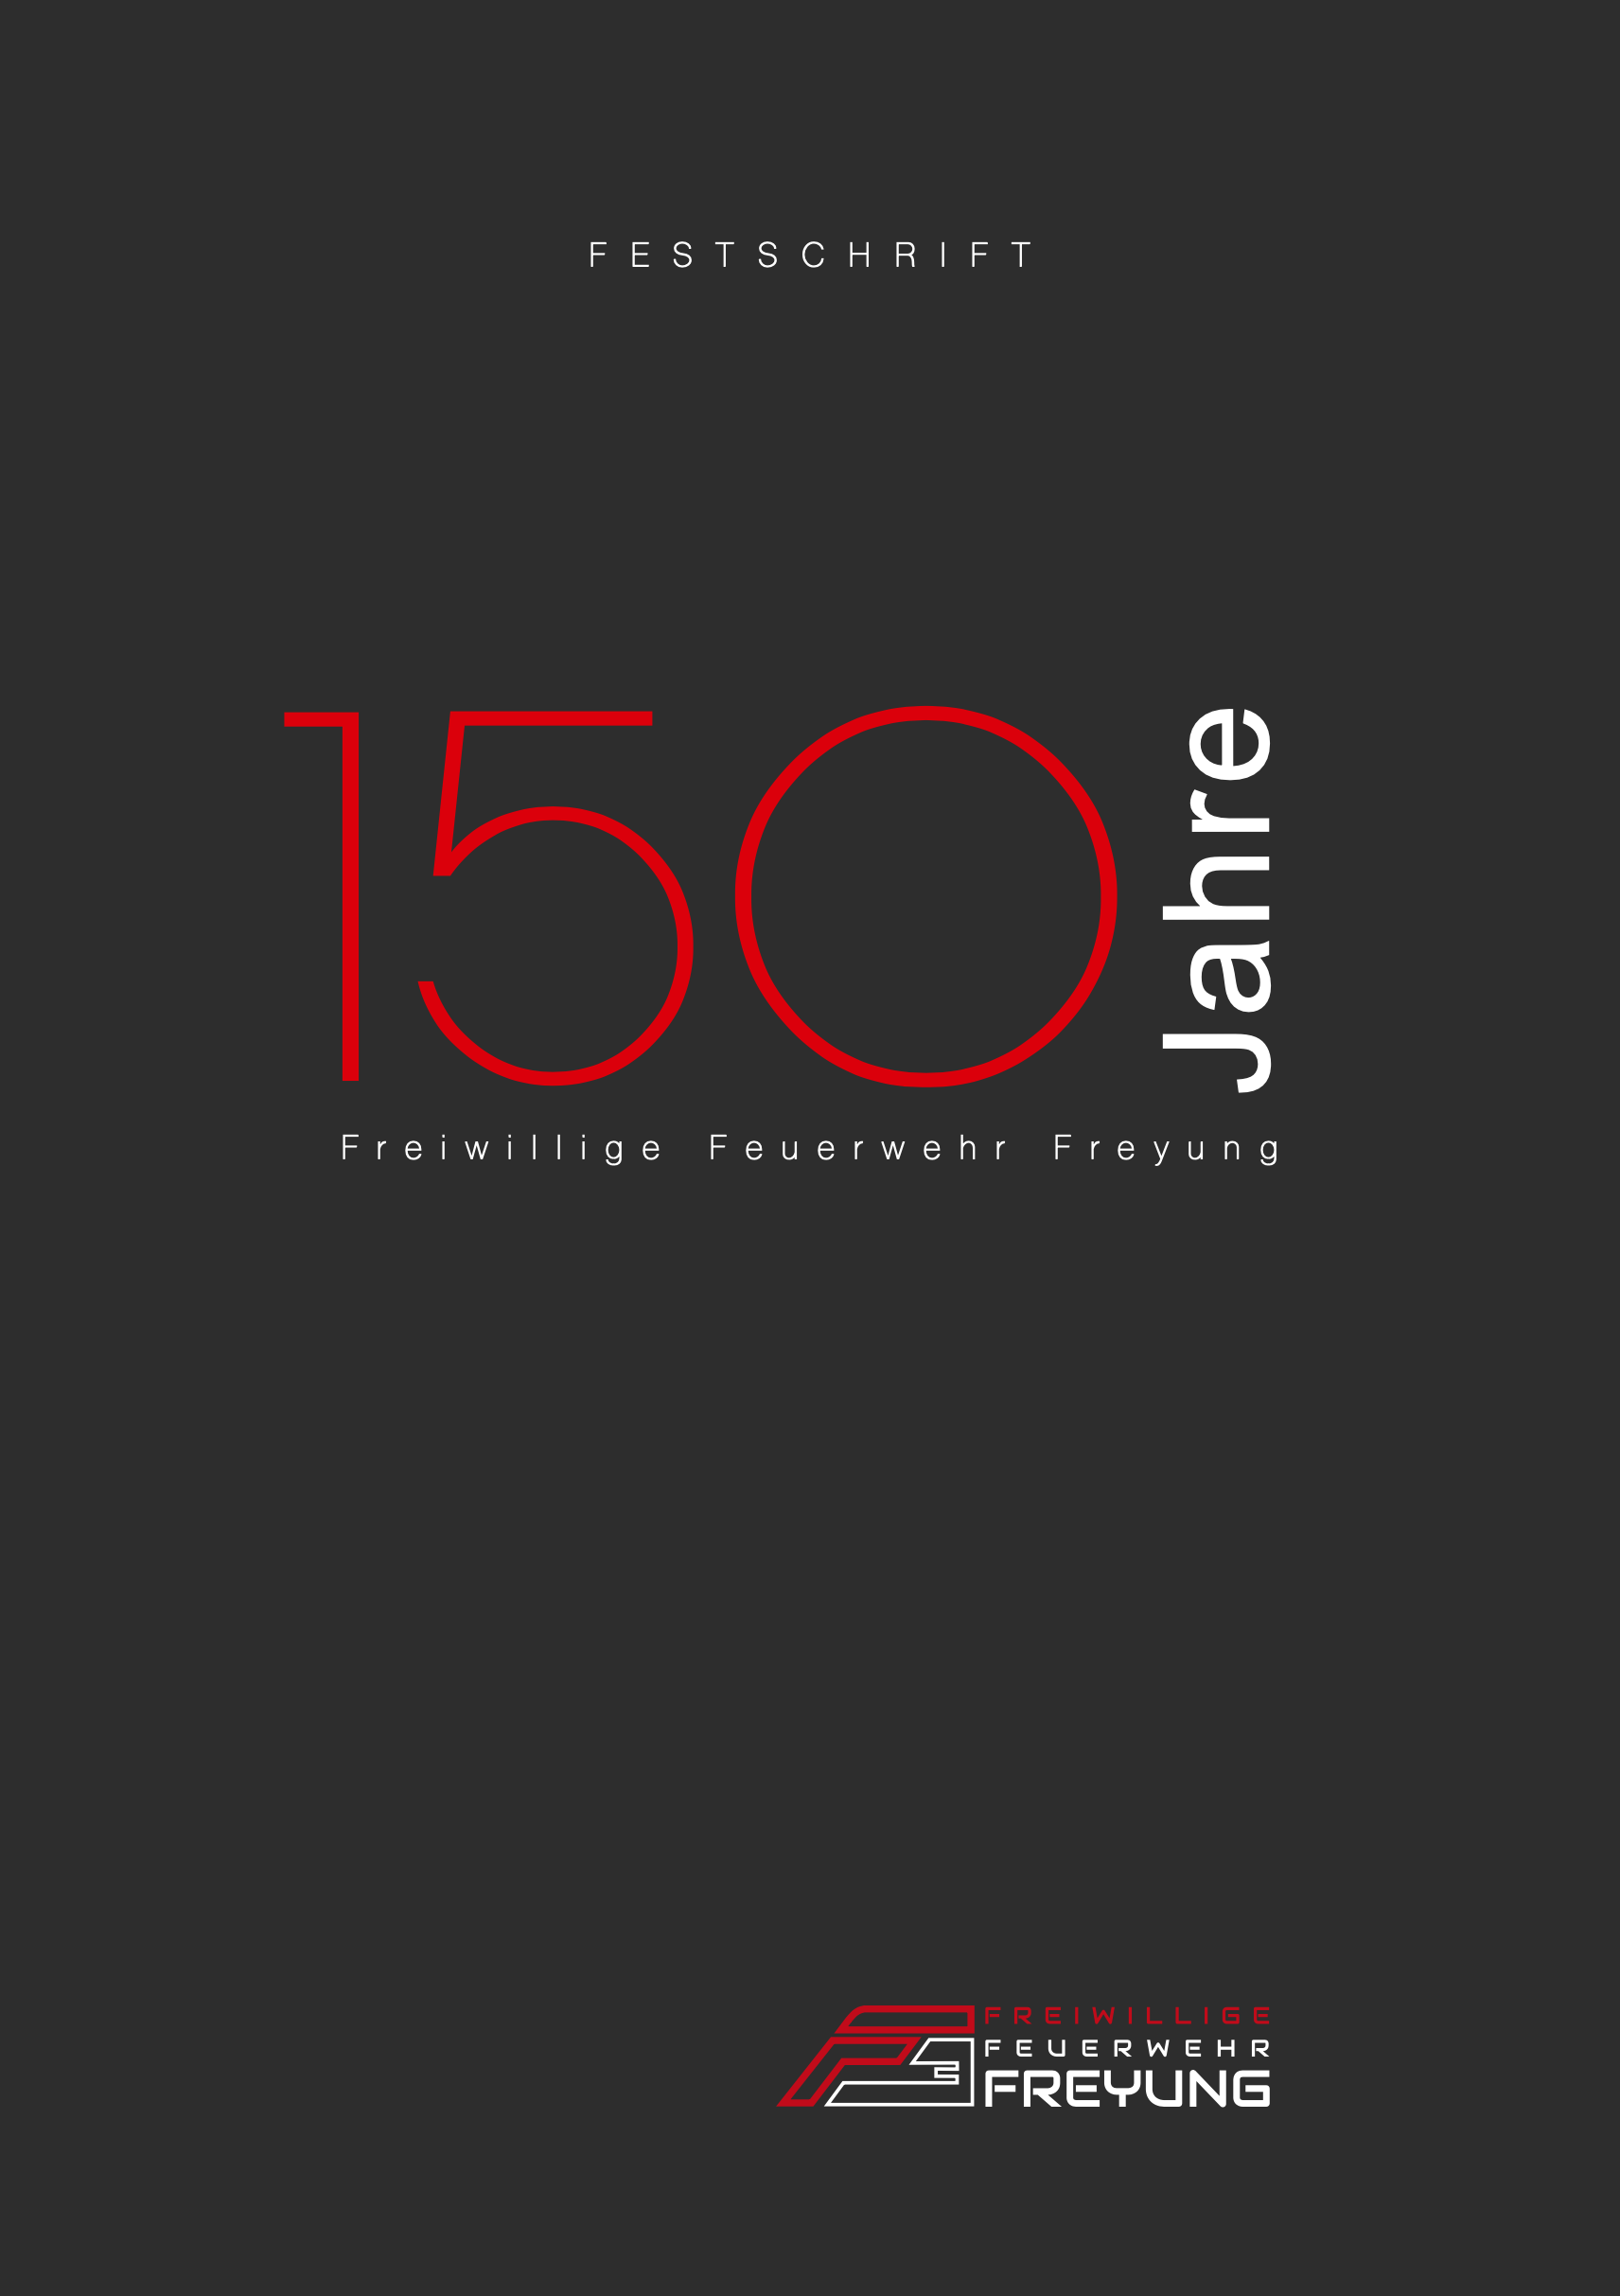 Festschrift 150-jähriges FFW Freyung